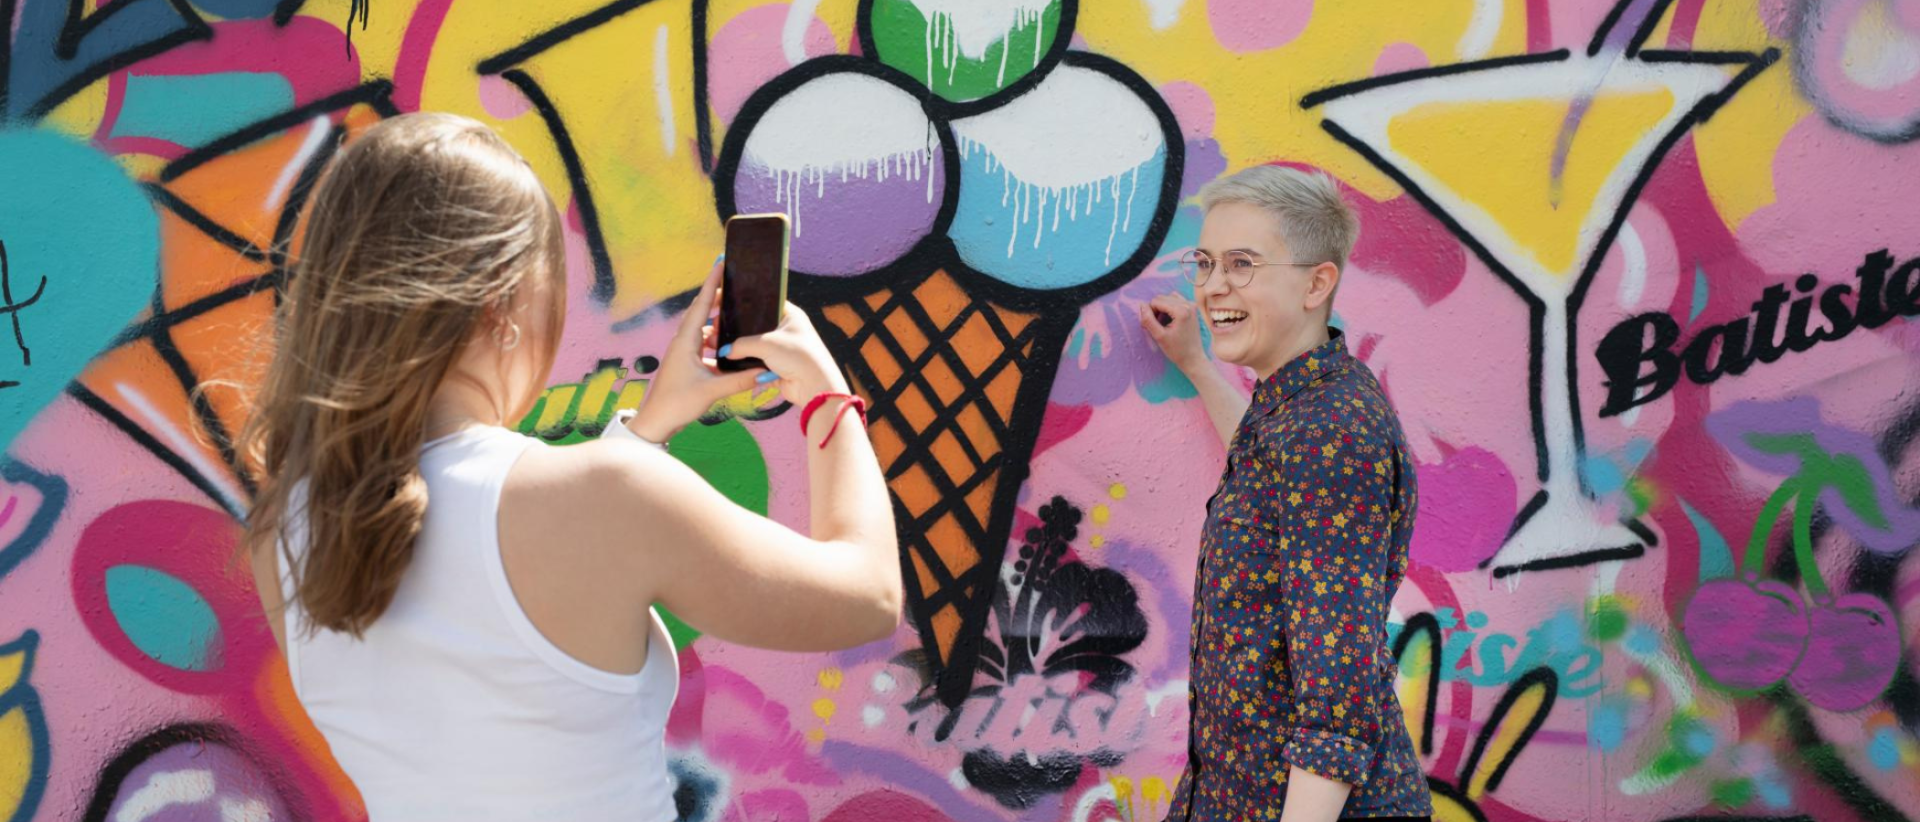 Nuori nainen ottaa valokuvaa toisesta naisesta, taustalla graffittiseinä